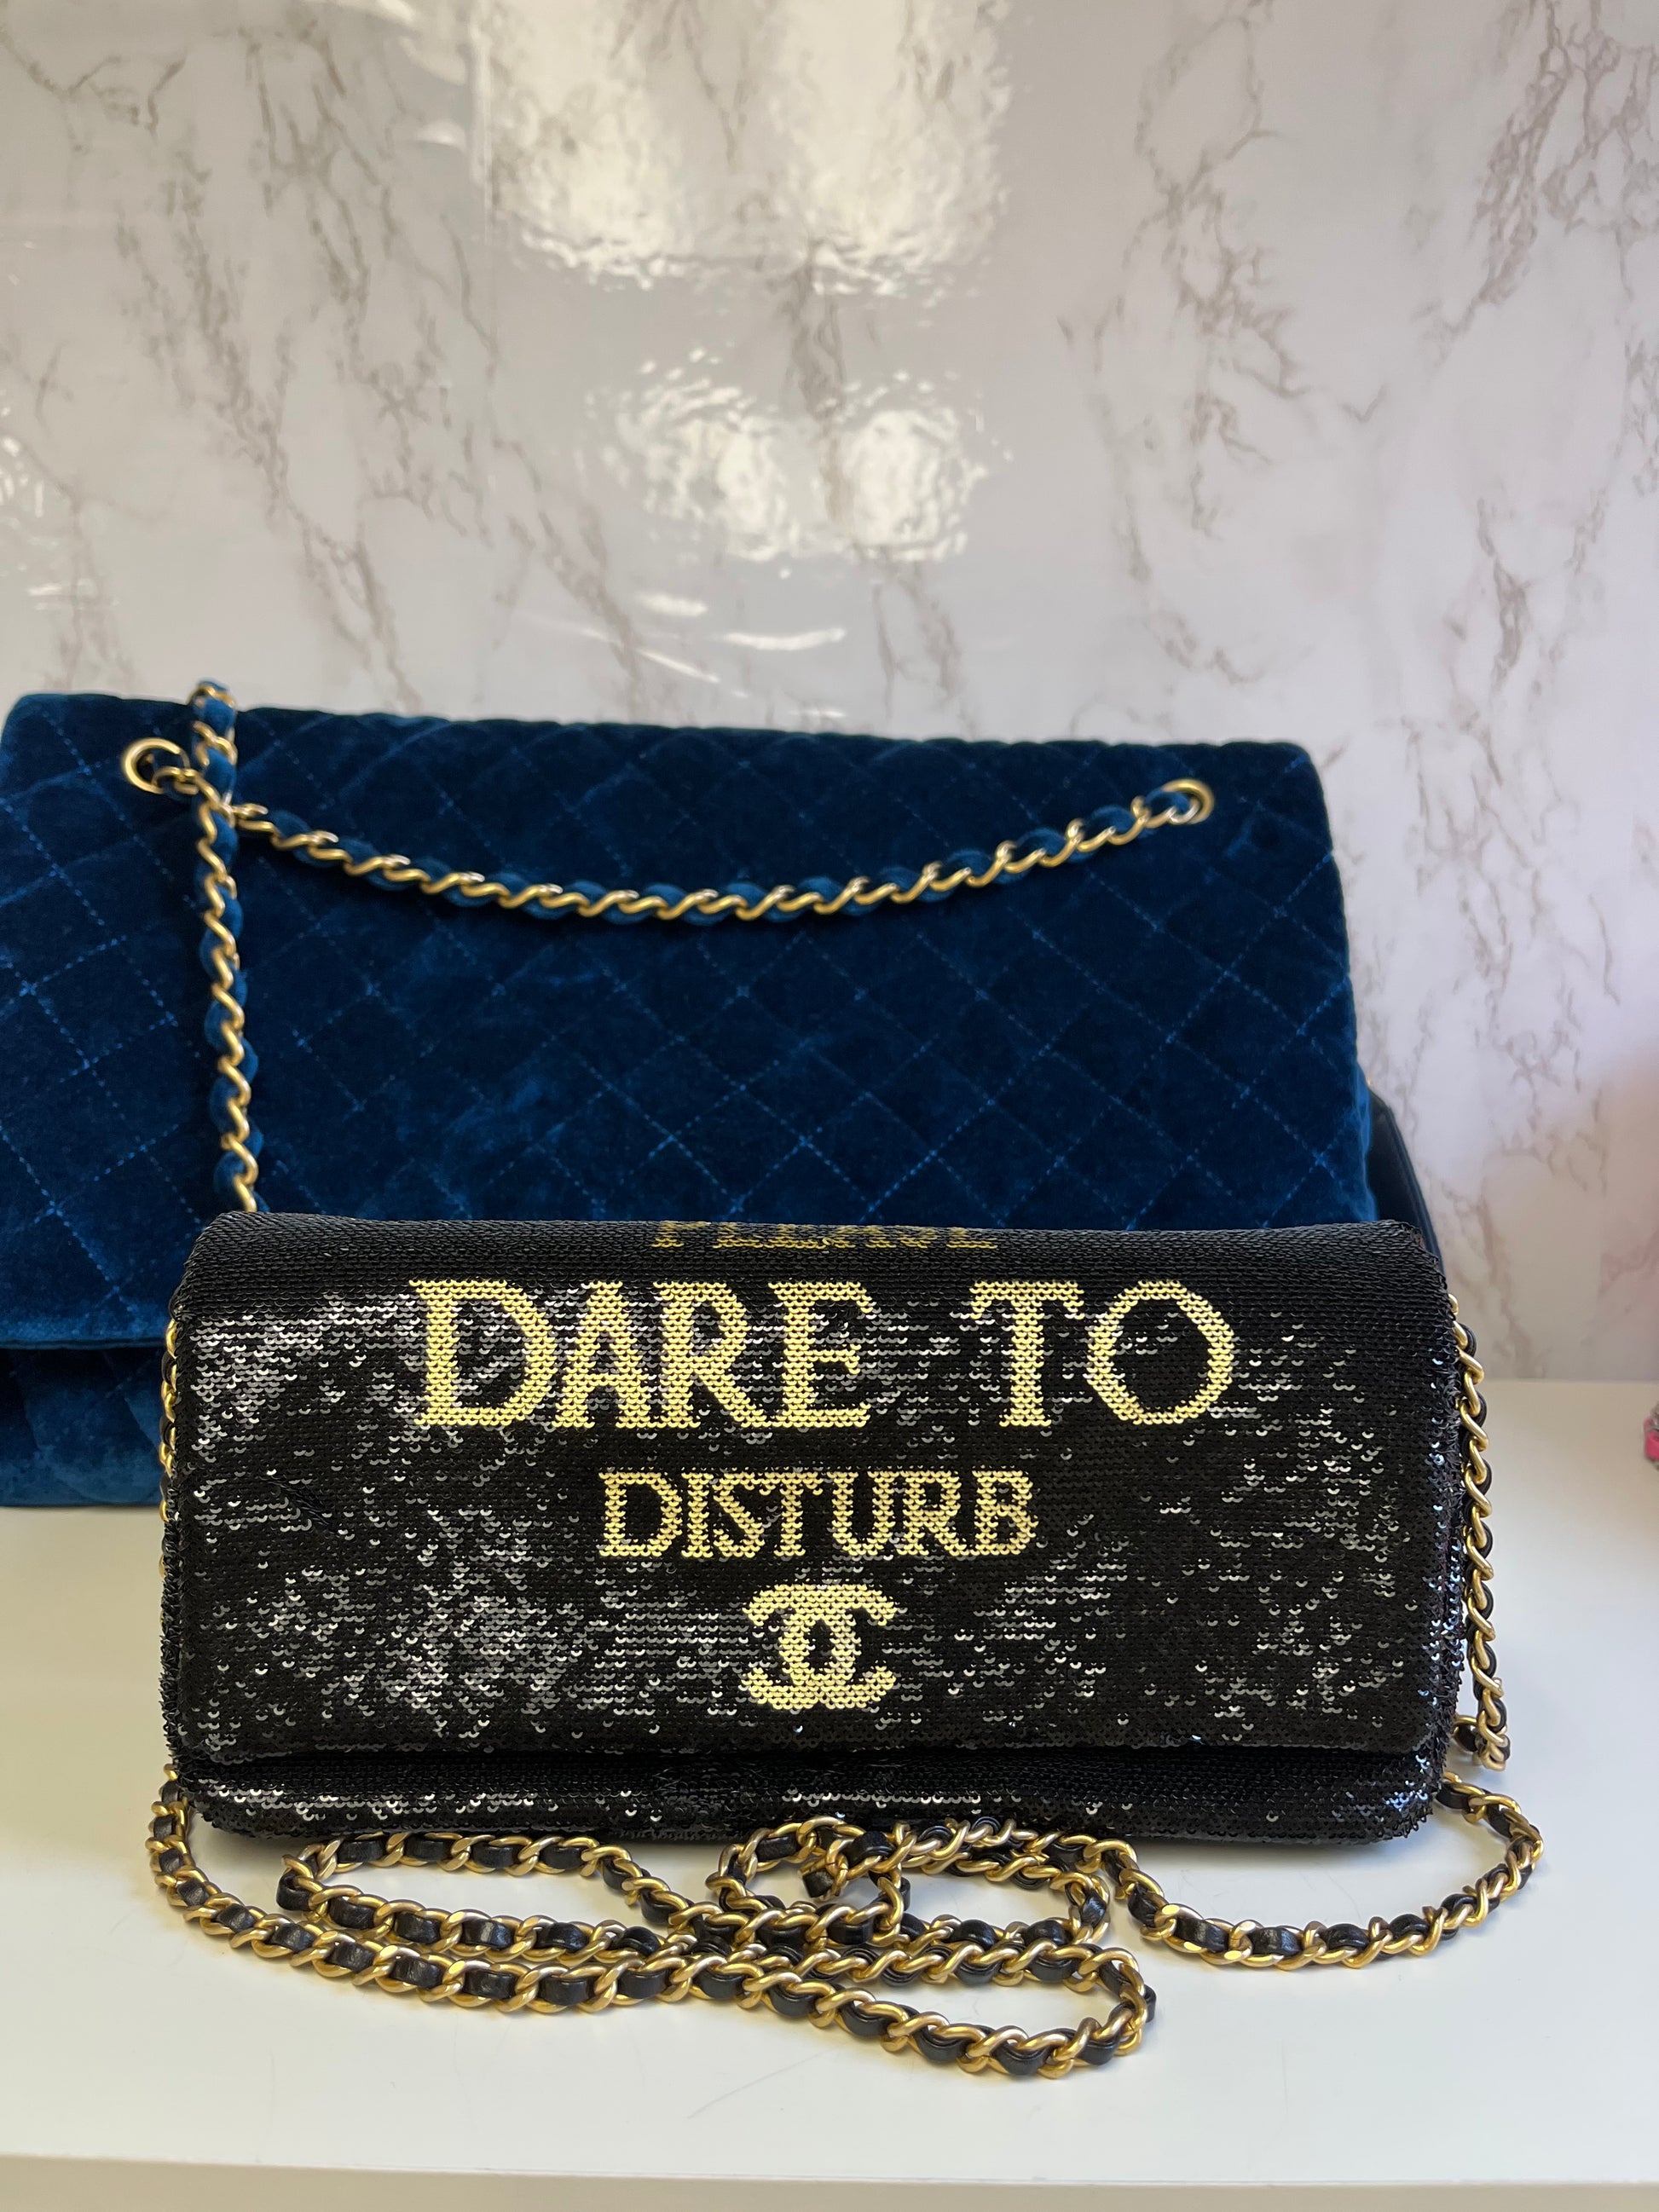 Chanel Rare Dare To Disturb Flap Bag